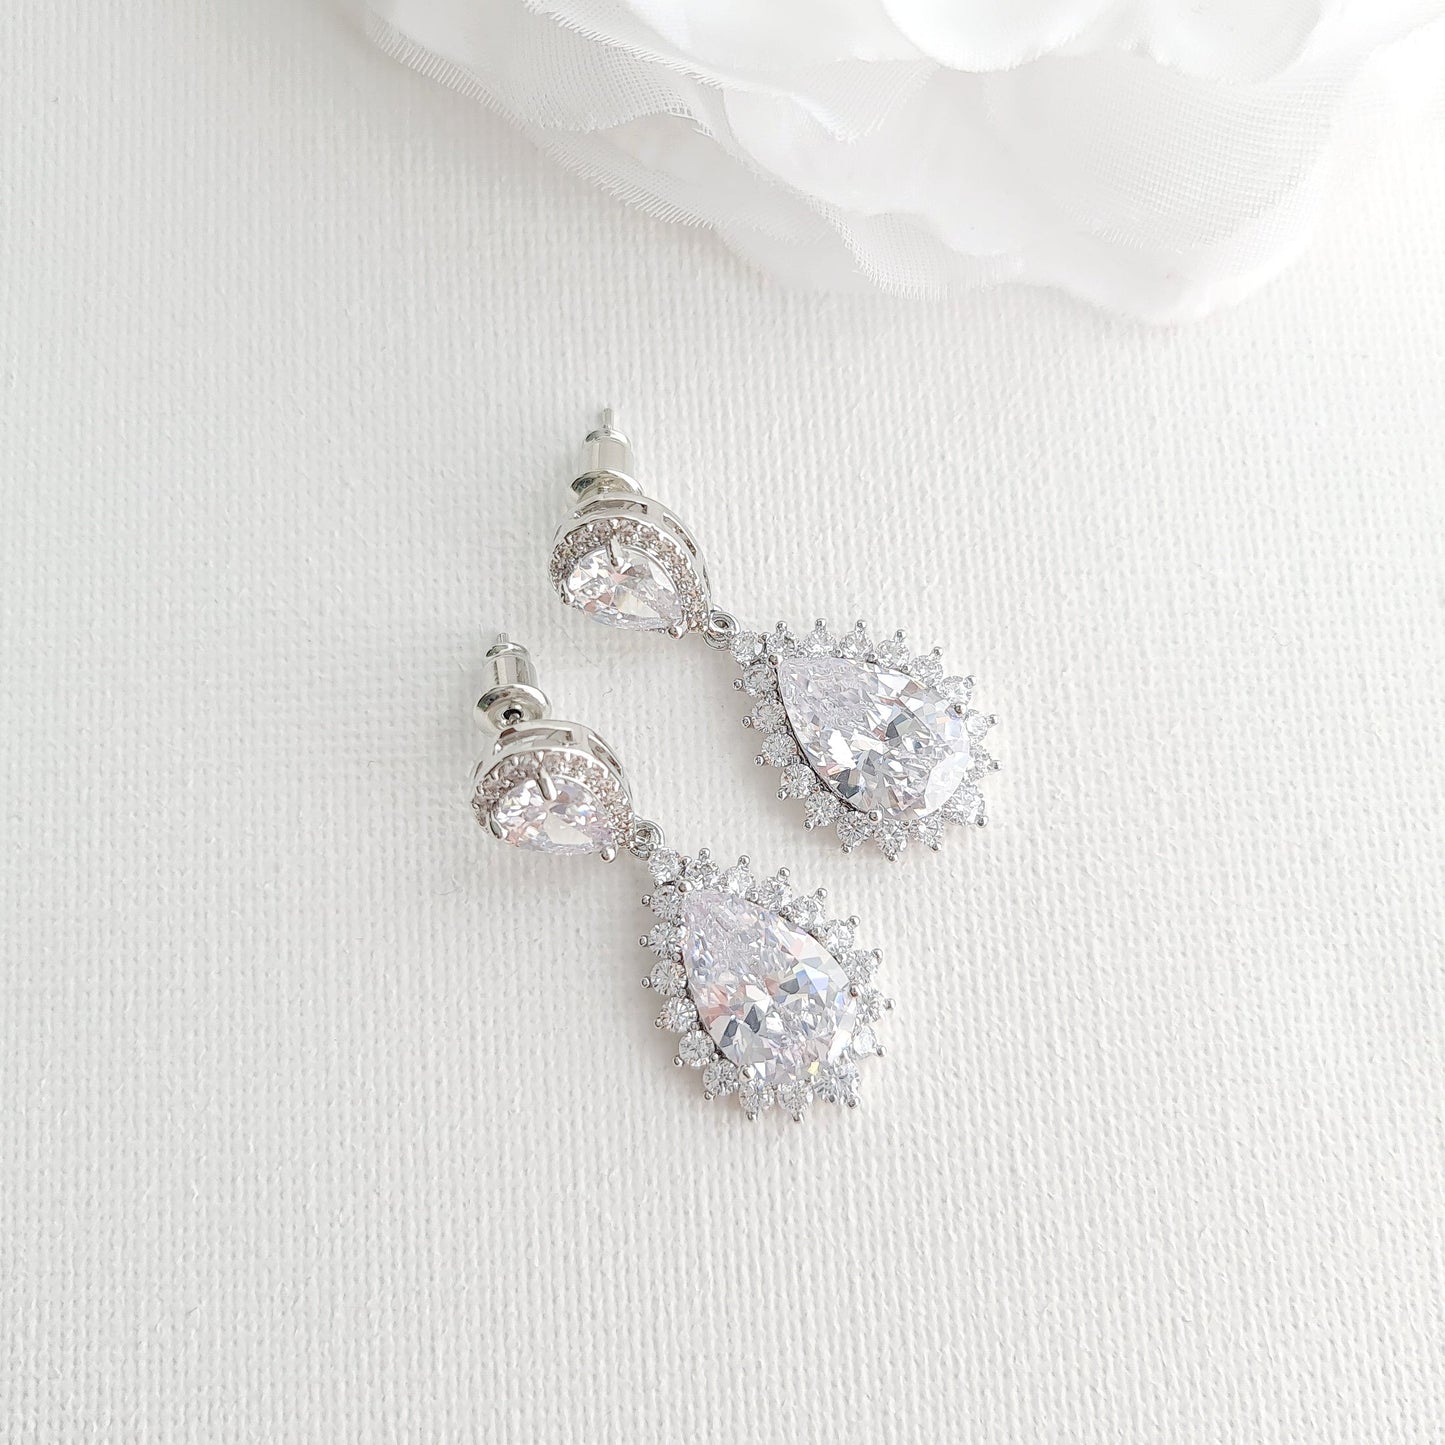 silver teardrop earrings for weddings